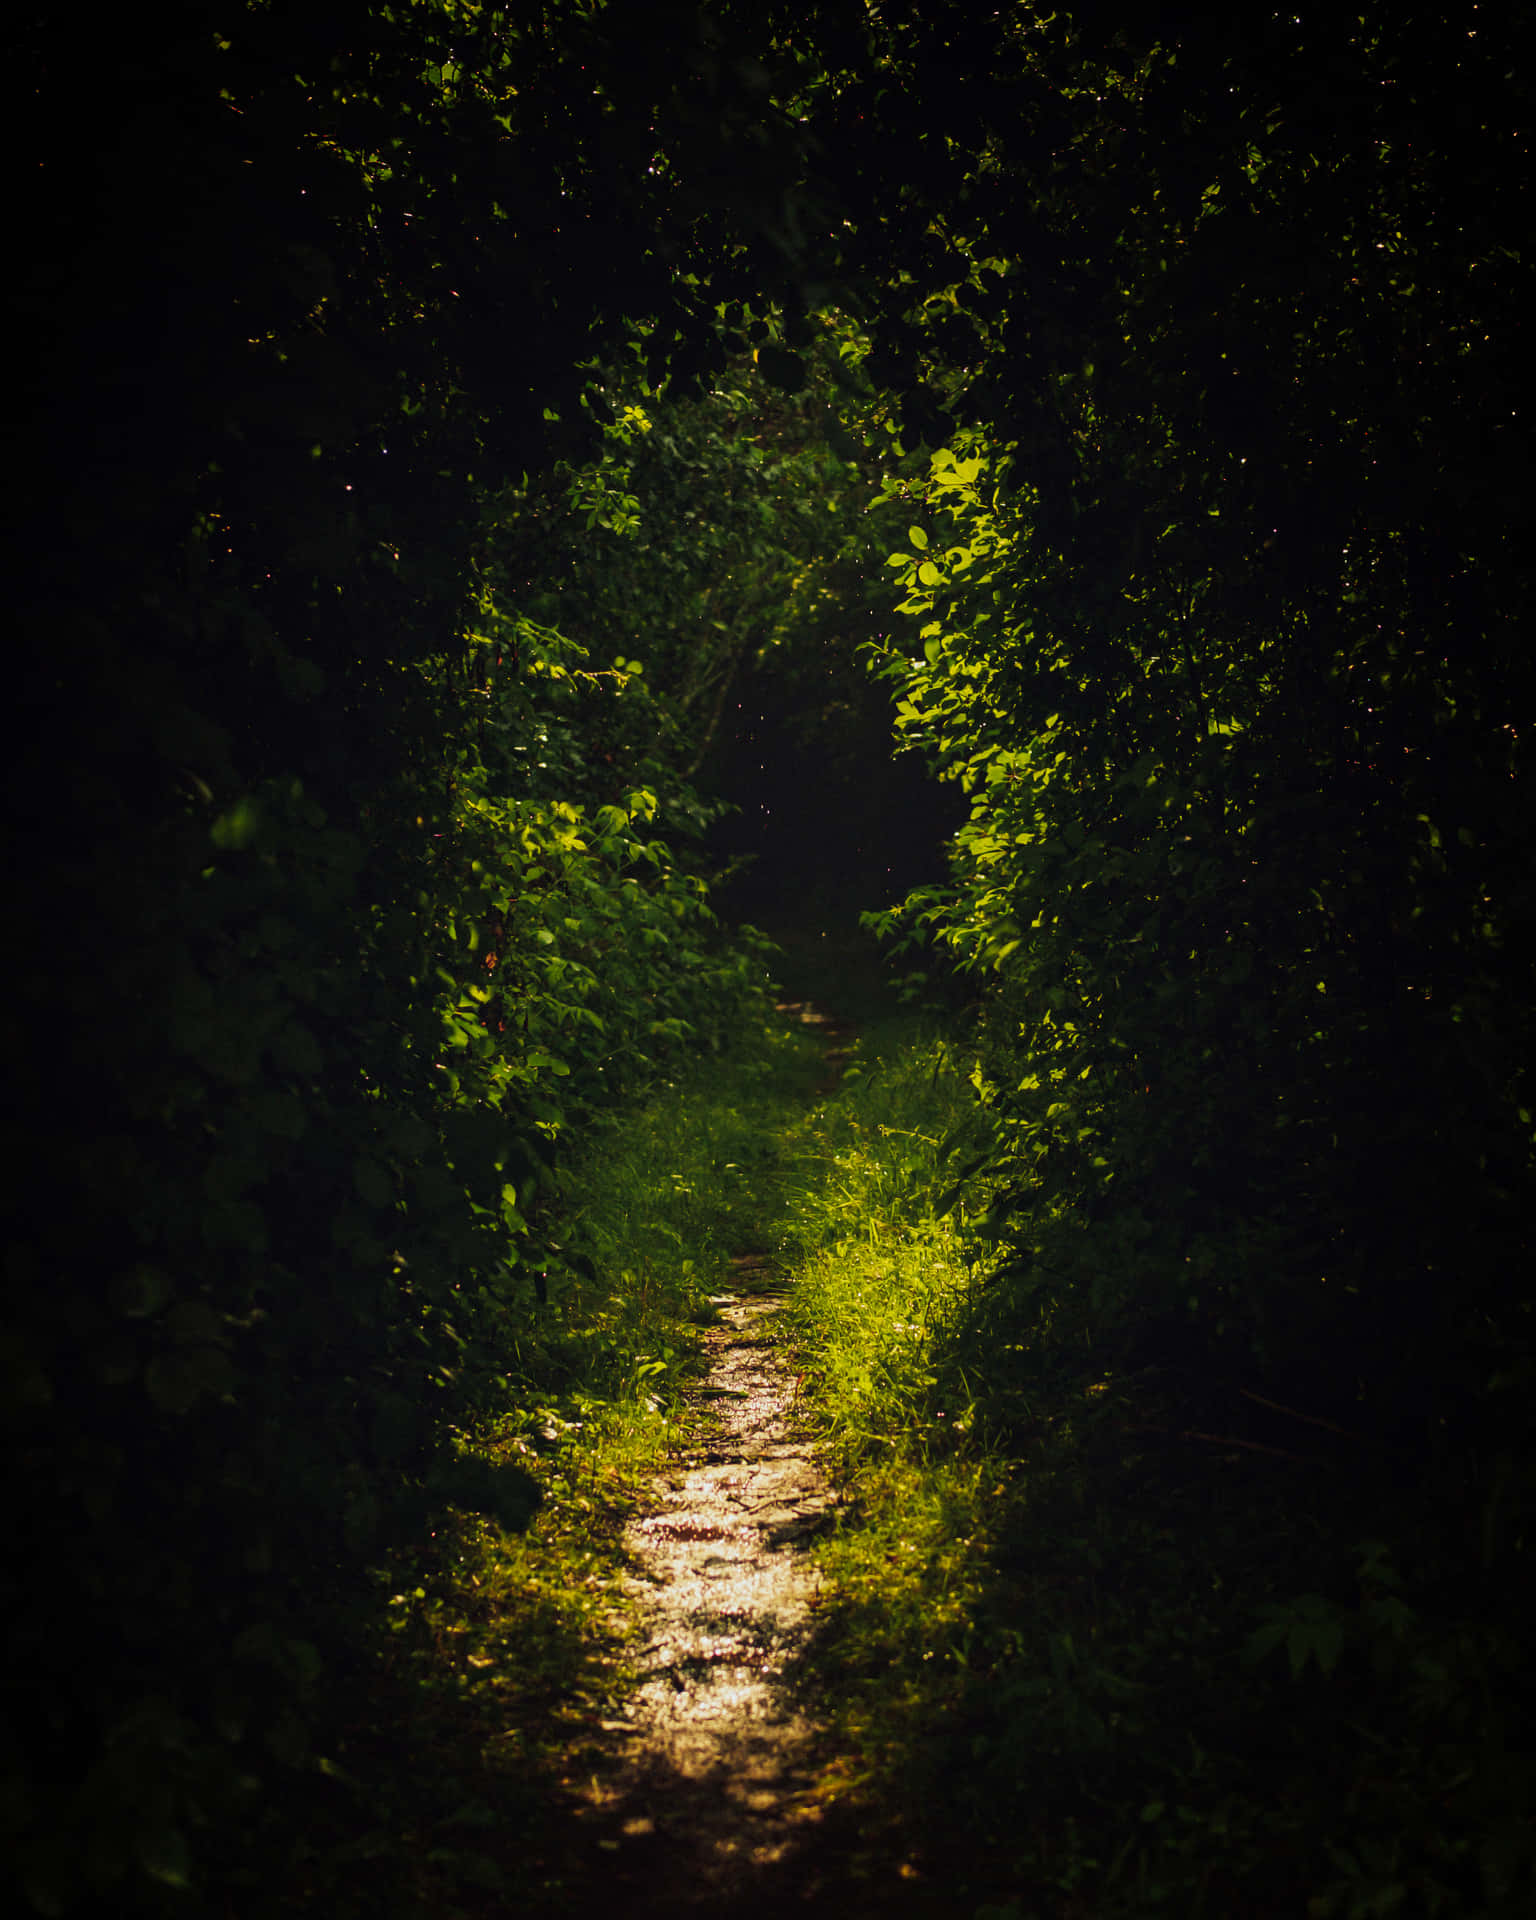 A Path Through A Forest